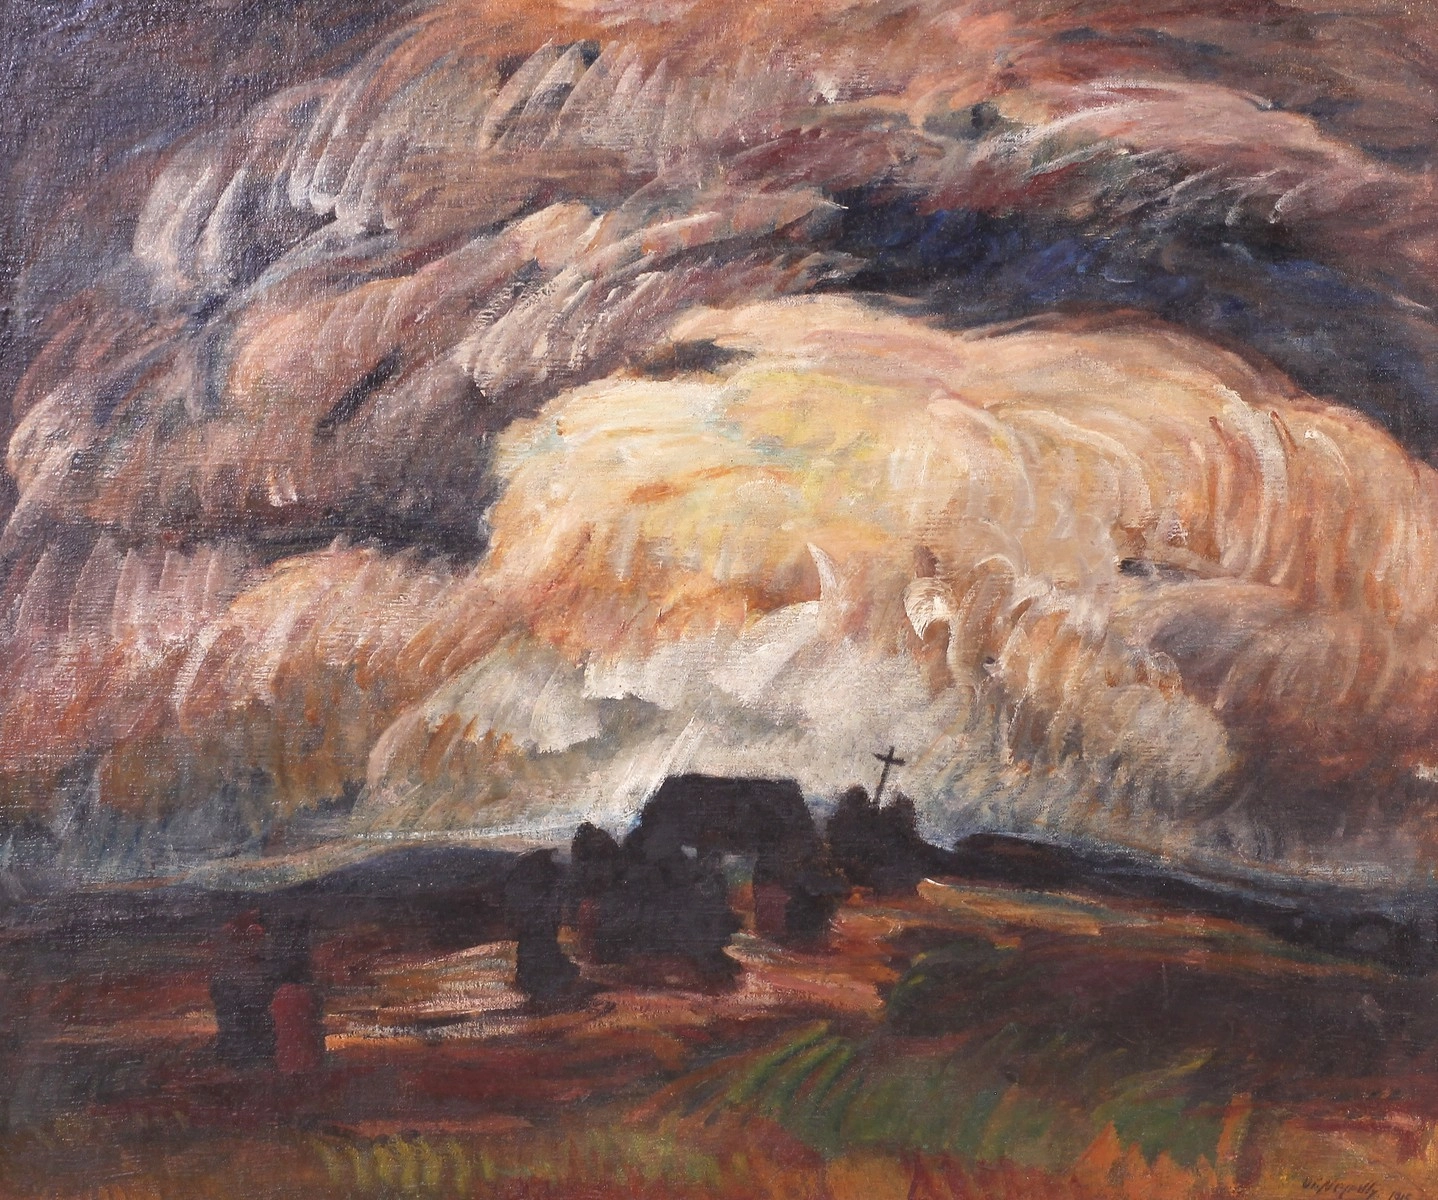 Nejedlý Otakar (1883-1957), Před bouří